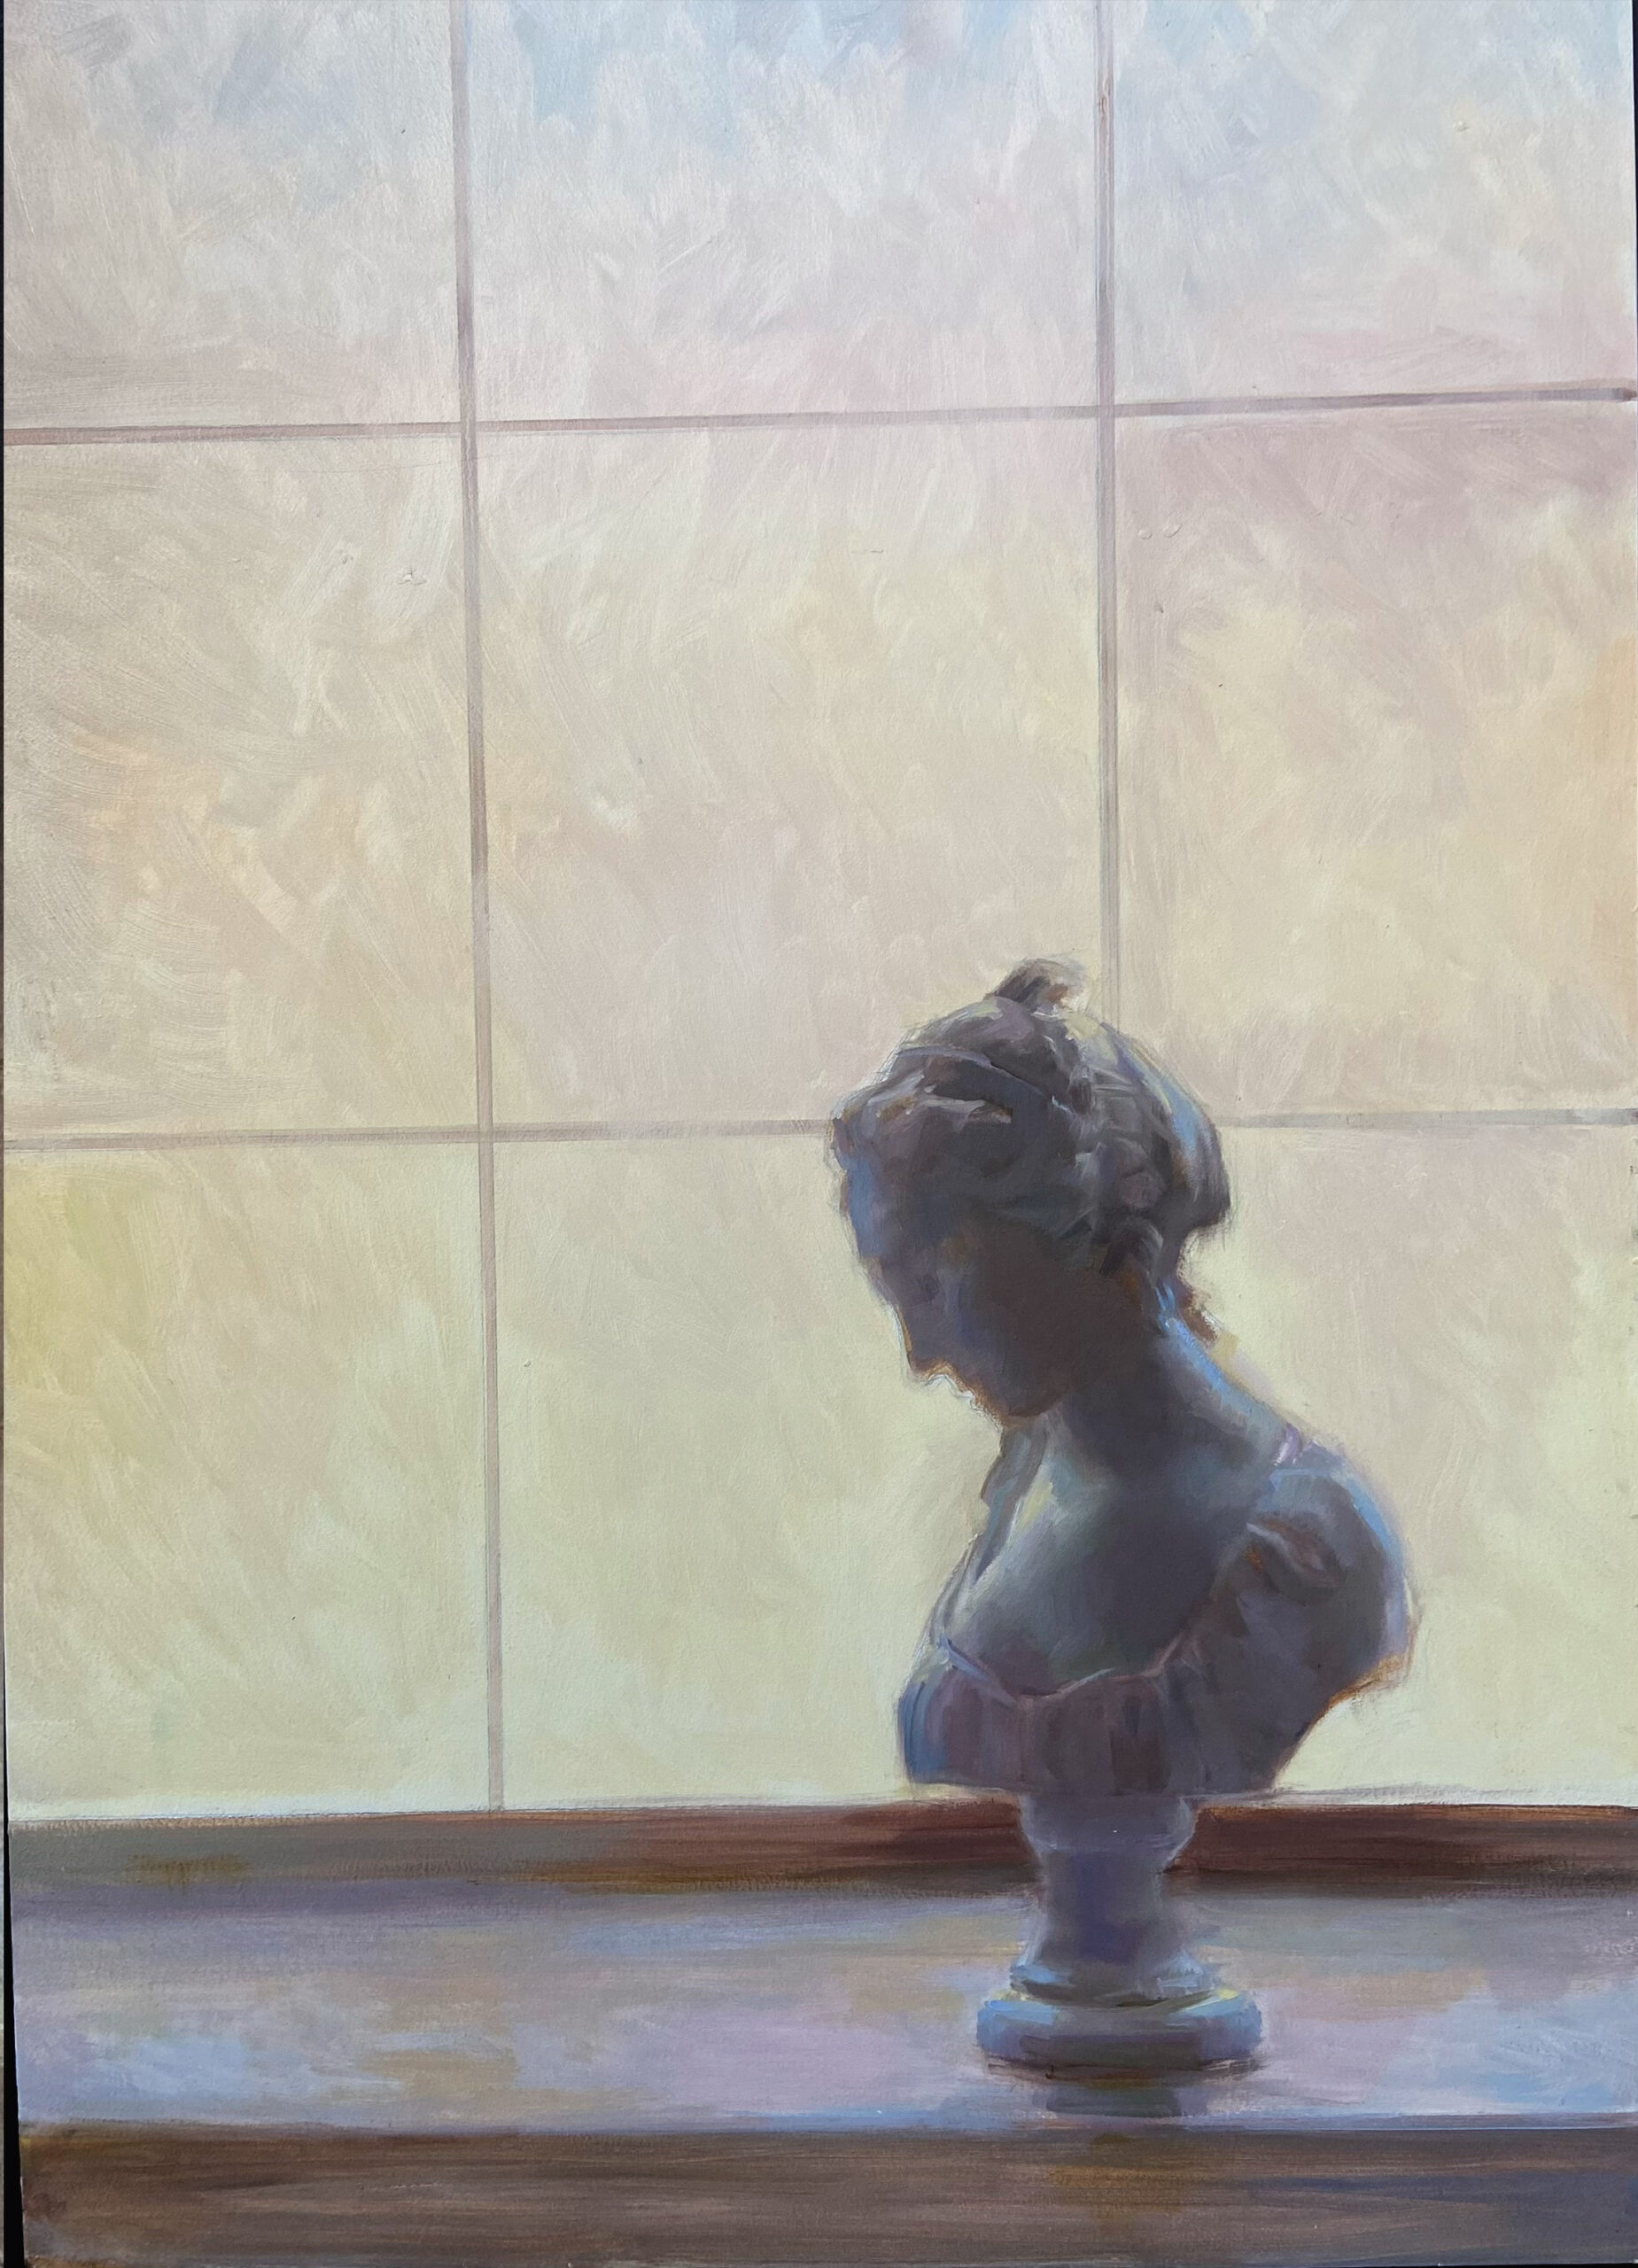 "Window" by Juliette Aristides